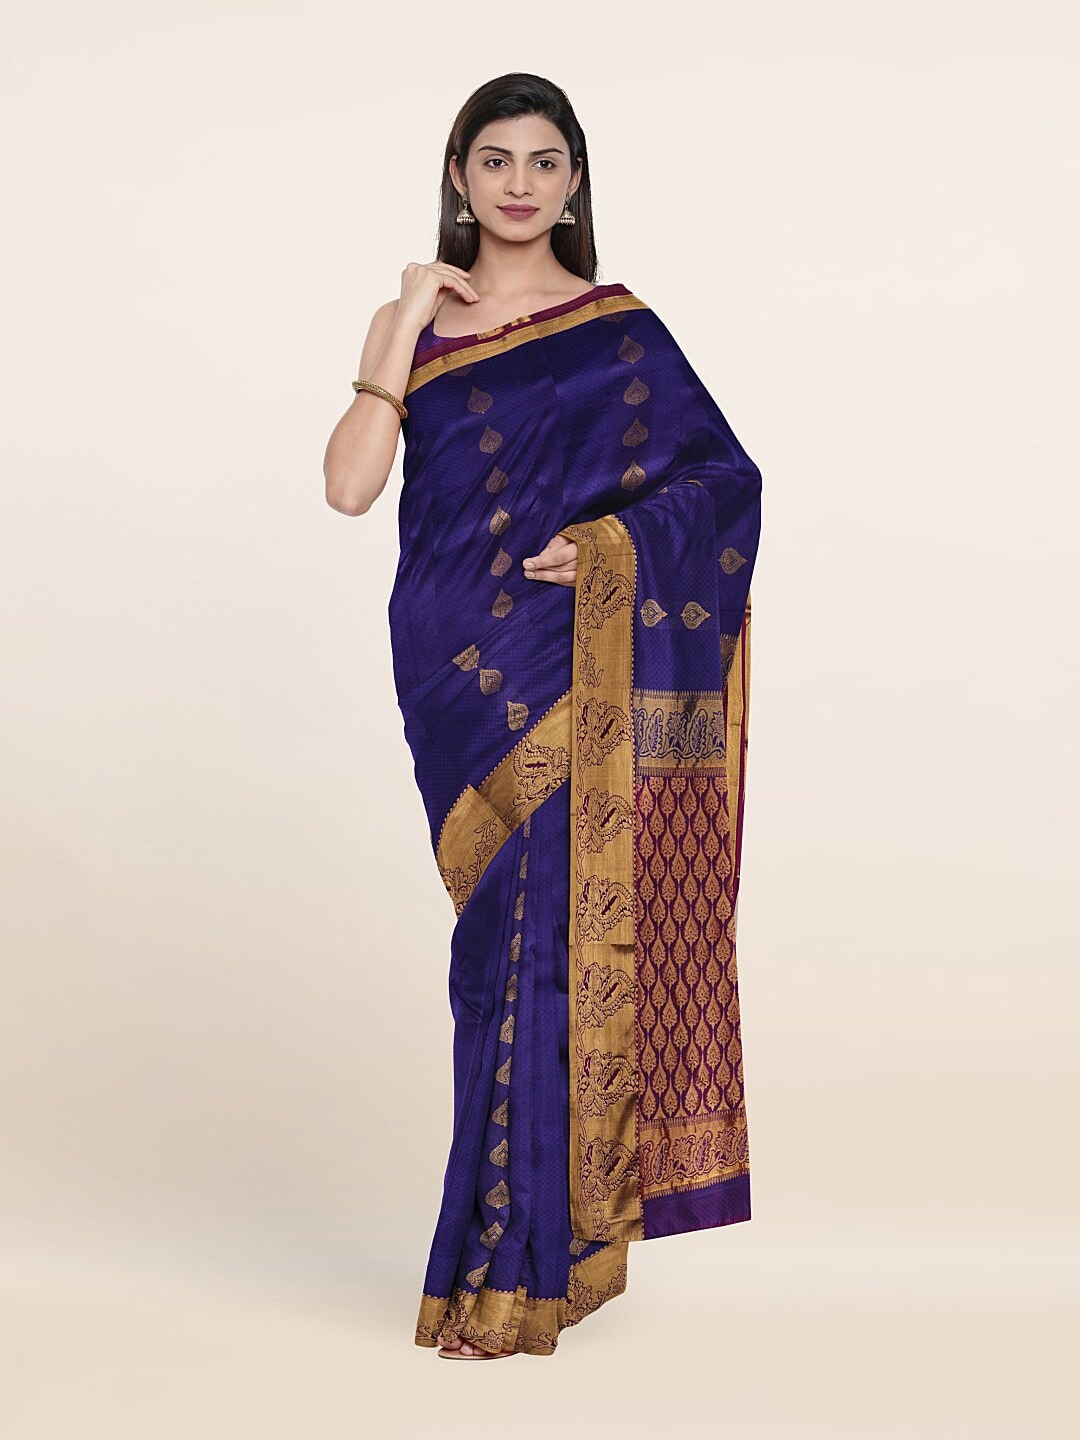 Pothys Blue & Copper-Toned Ethnic Motifs Zari Pure Silk Saree Price in India